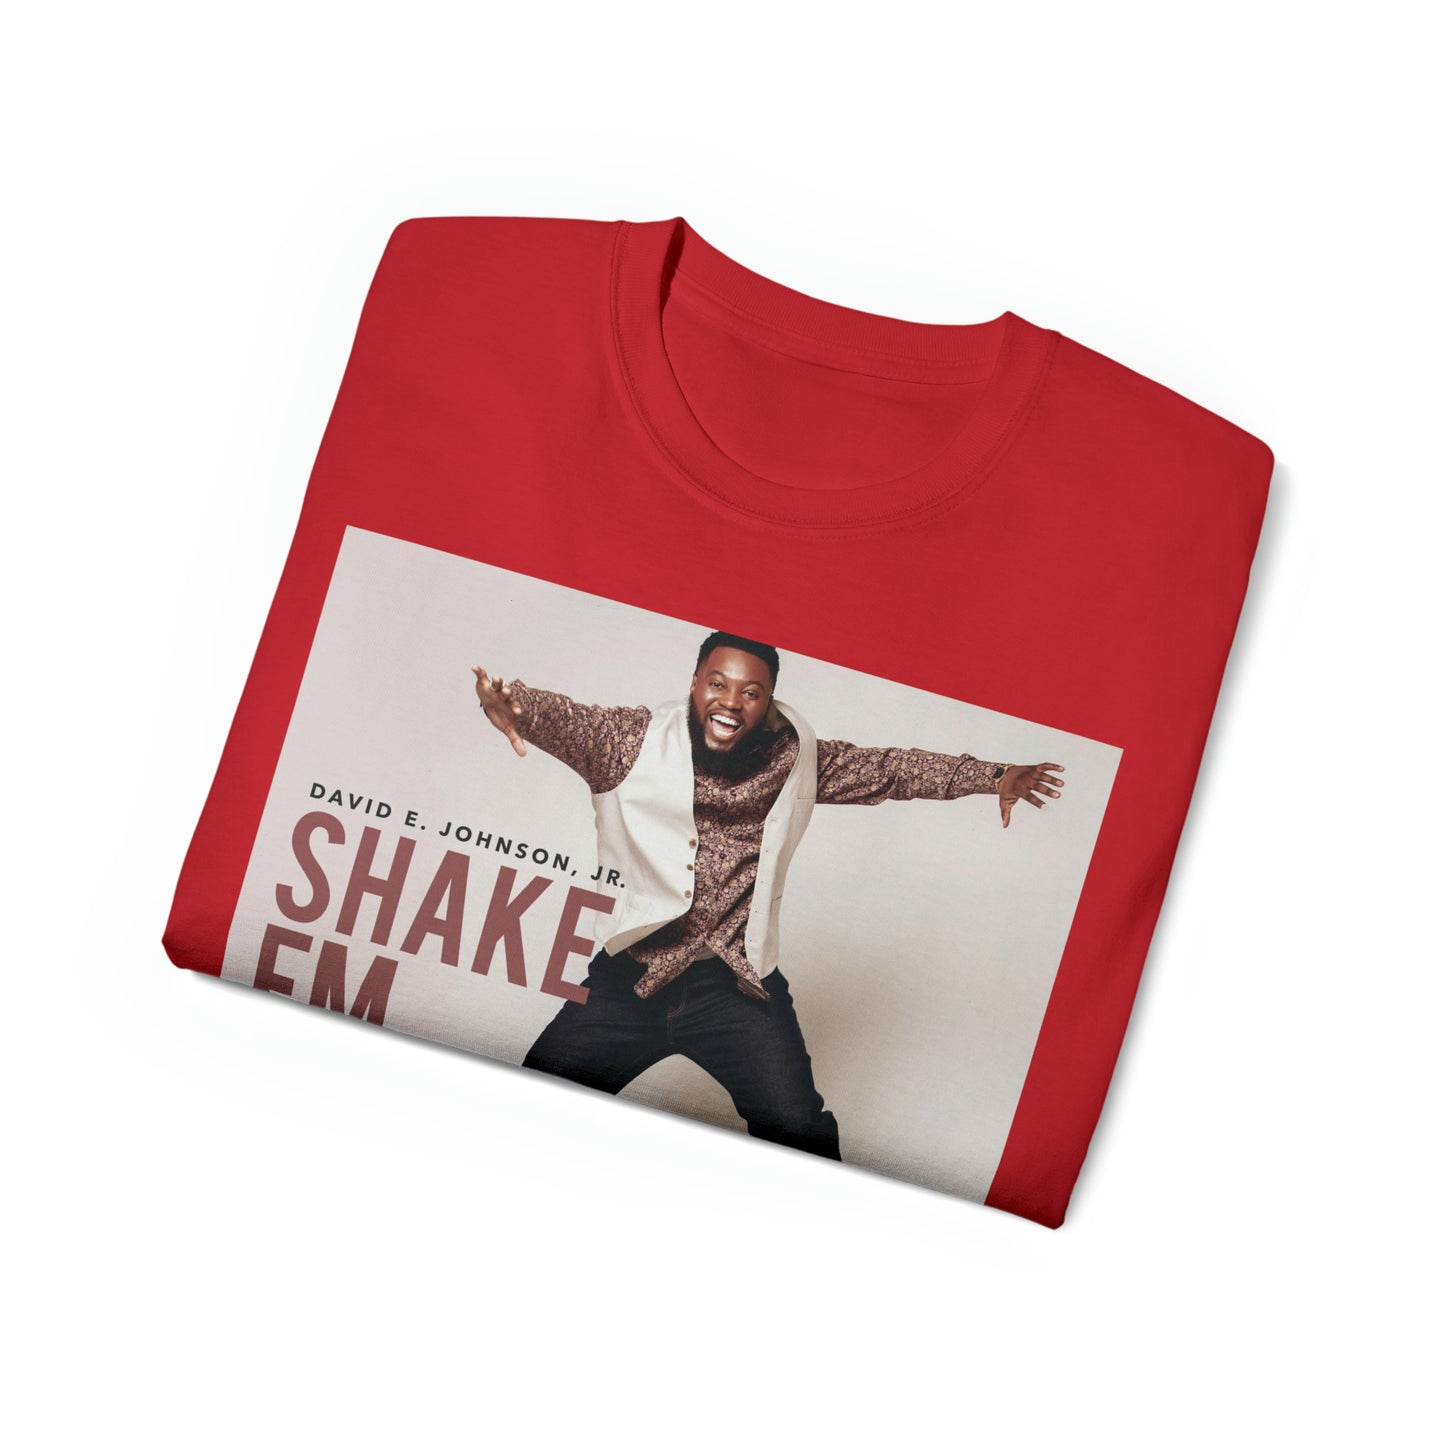 "Shake Em Off" Cover T-Shirt